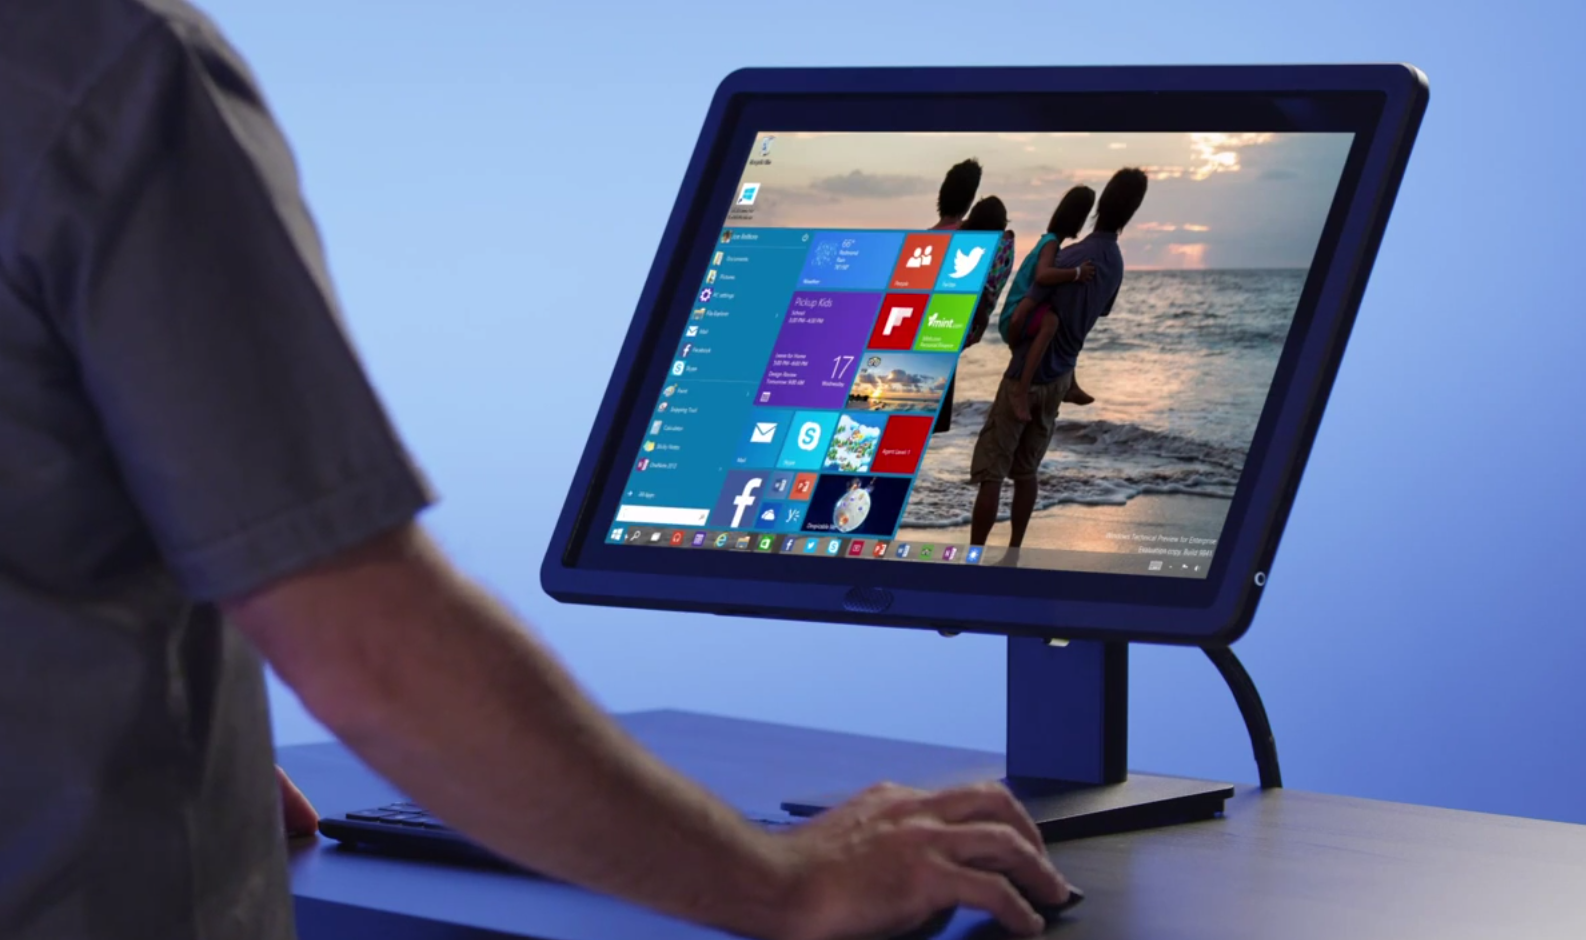 Windows 10: arriva il nuovo sistema operativo di Microsoft, ecco tutte le novità! [VIDEO]